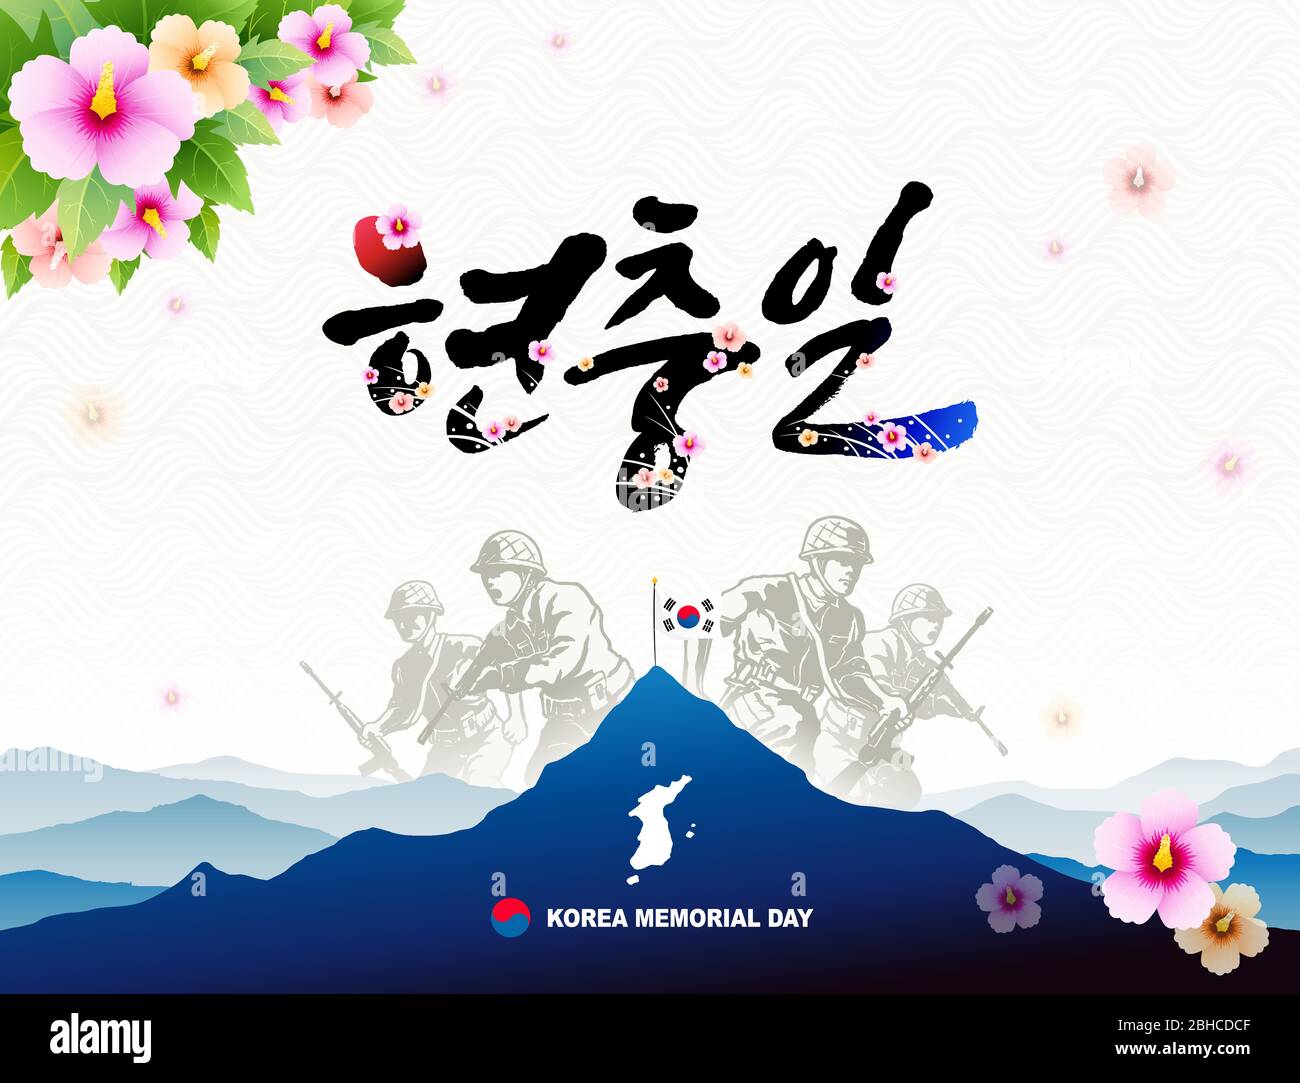 Memorial Day in Korea. Taegeukgi auf dem Gipfel des Berges, Koreakrieg tapfere Soldat Konzept Design. Koreanischer Gedenktag, Koreanisch Übersetzung. Stock Vektor